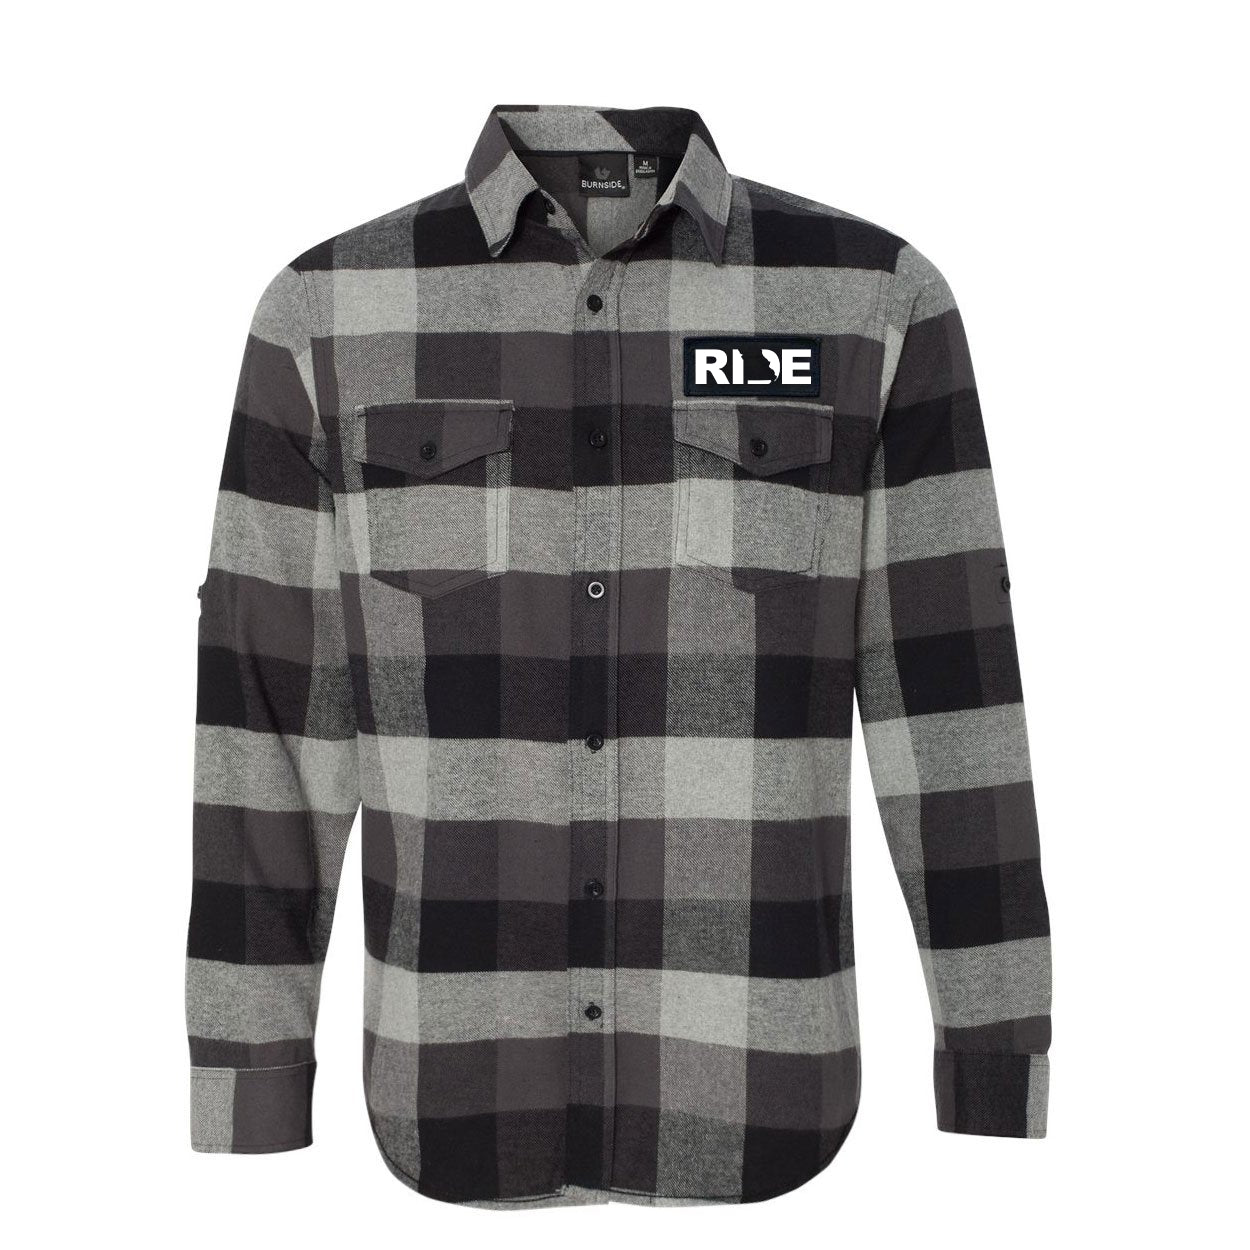 Ride MI Classic Flannel in Black/Gray